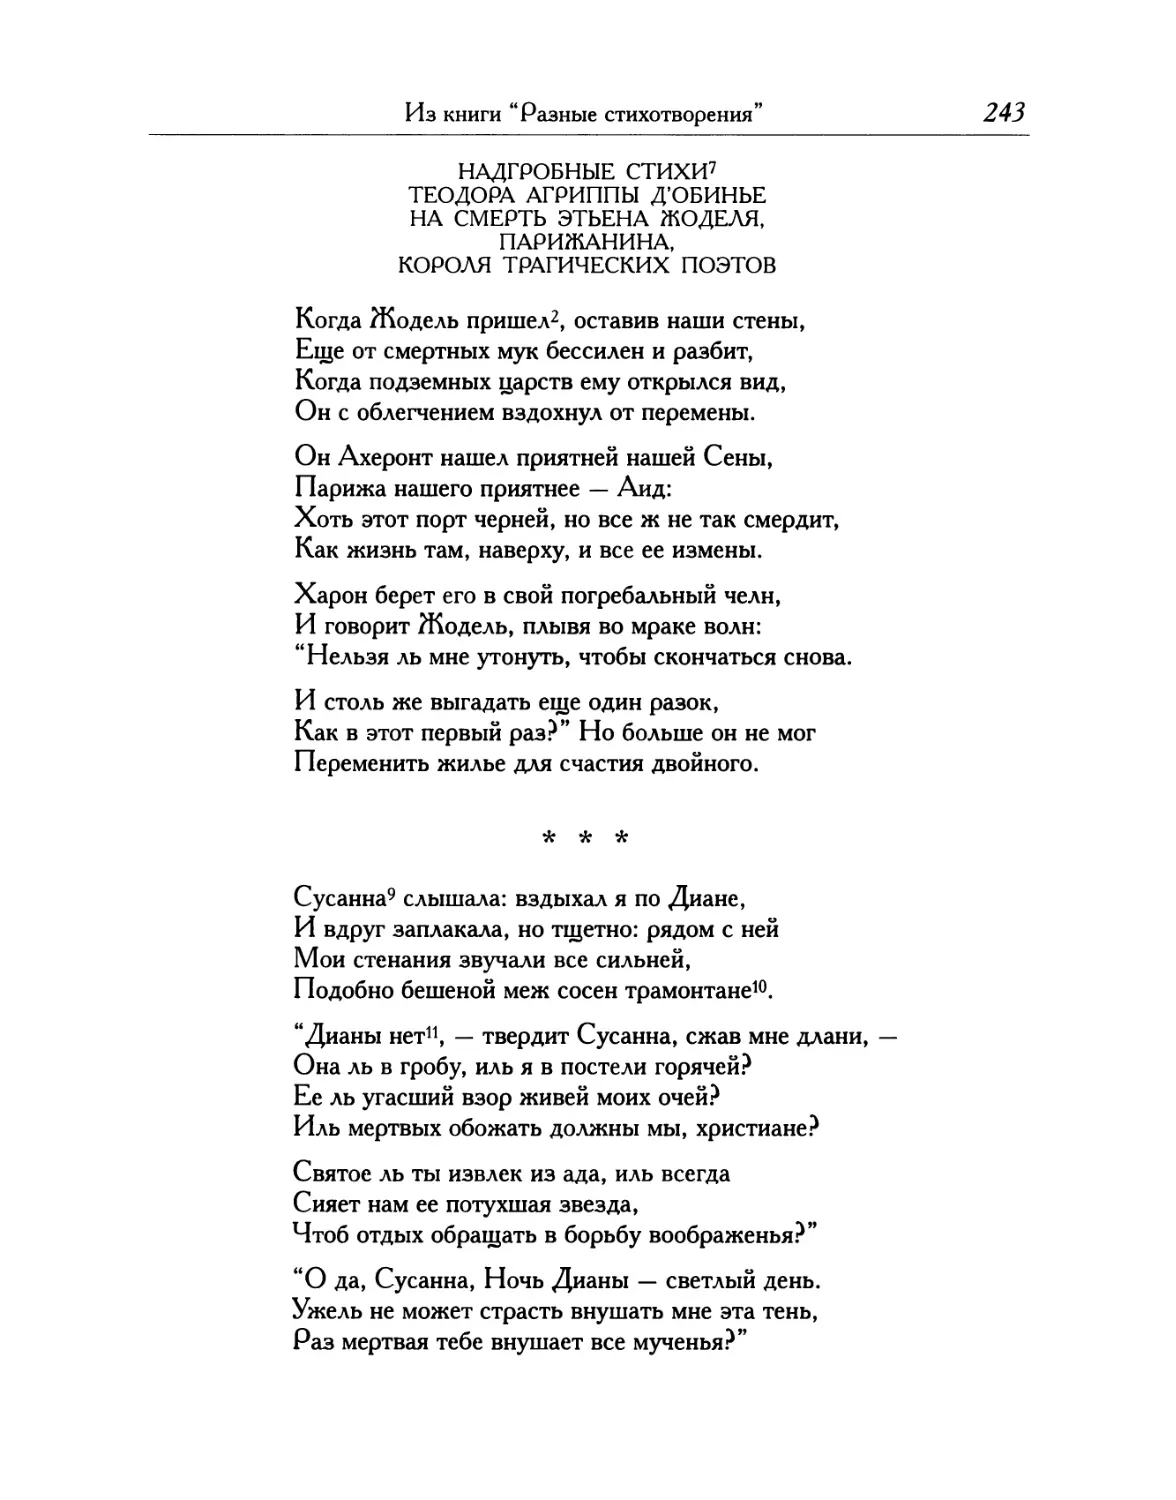 Надгробные стихи Теодора Агриппы д'Обинье на смерть Этьена Жоделя, парижанина, короля трагических поэтов
\